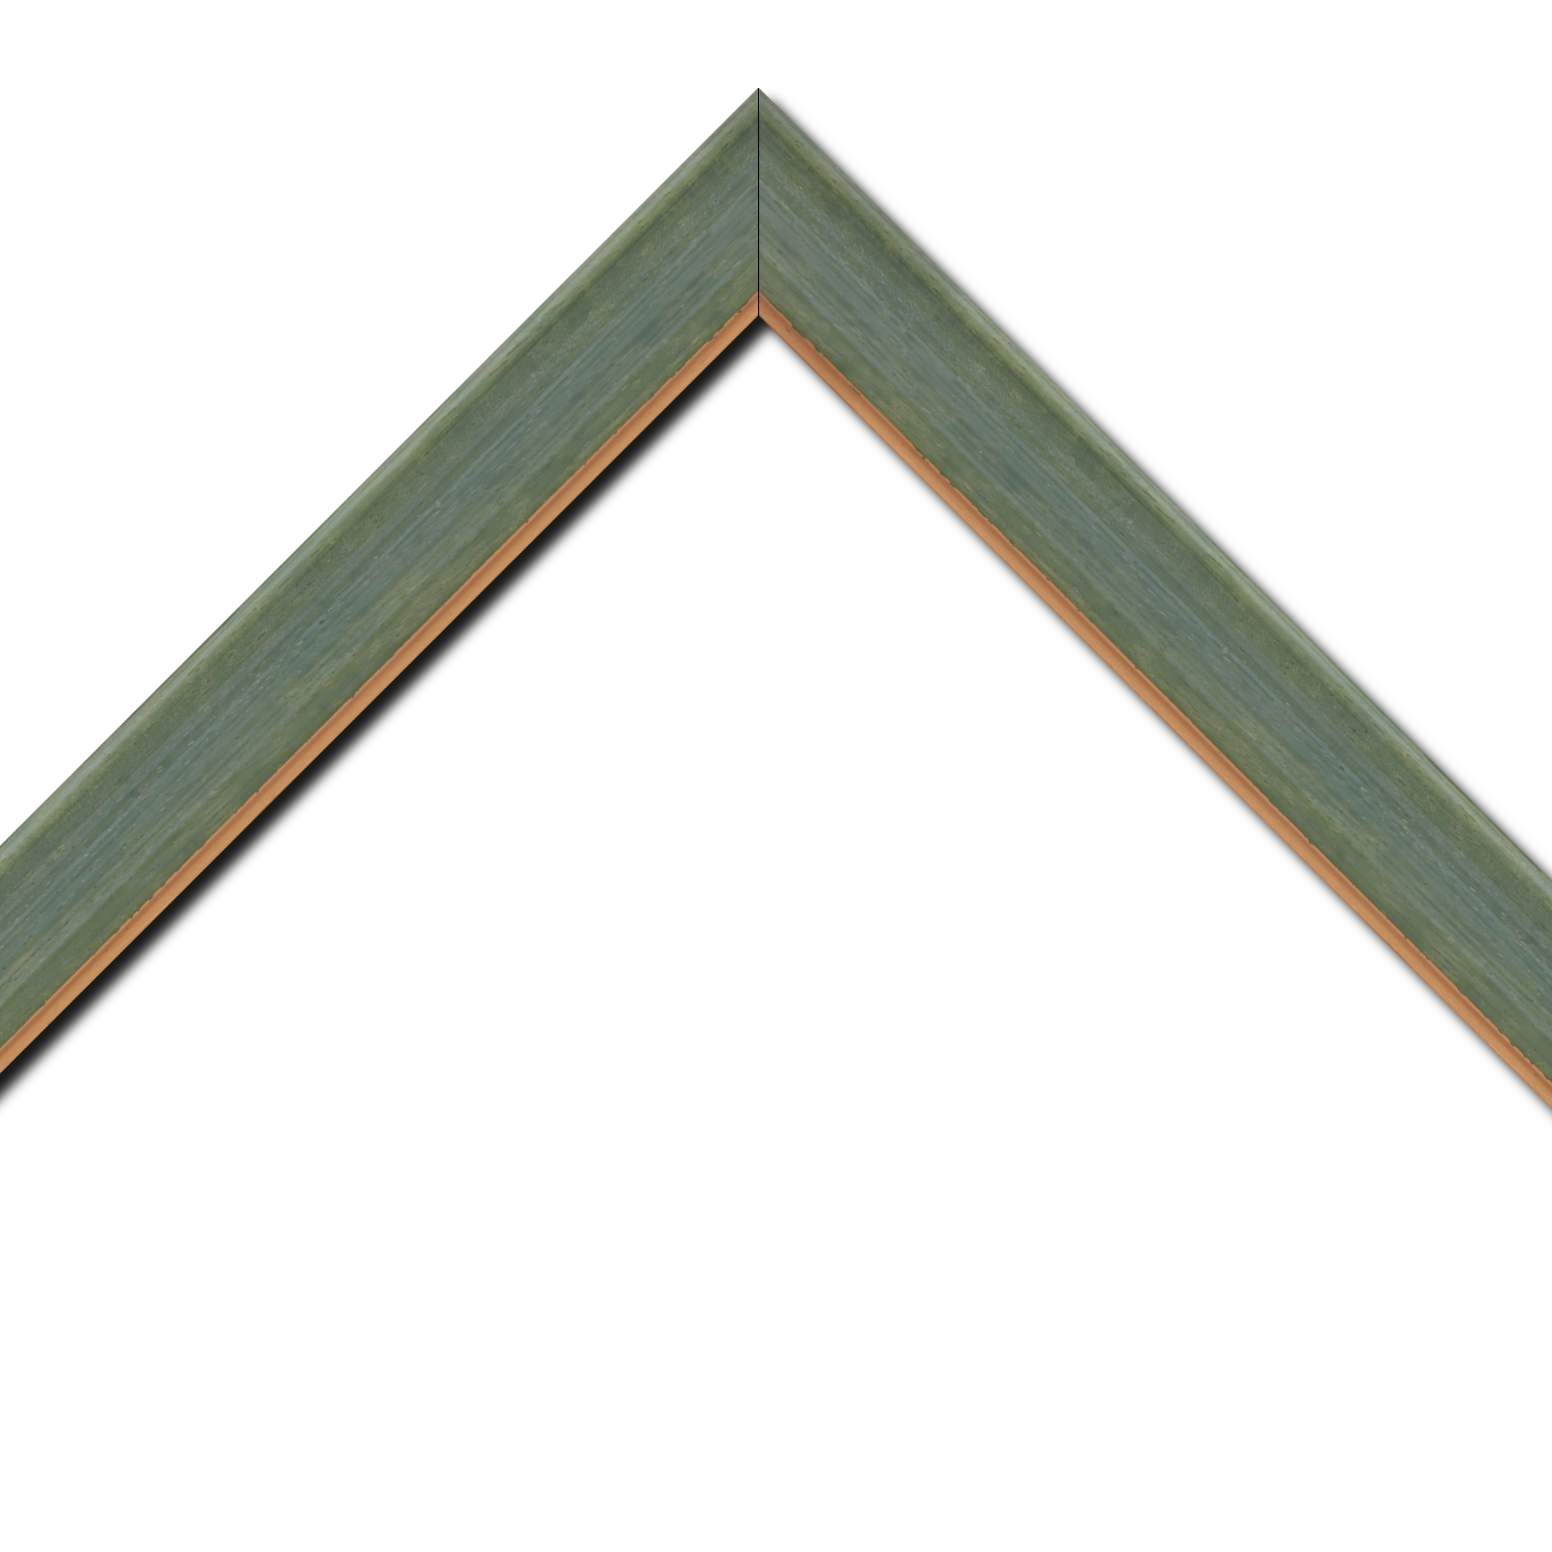 Baguette bois profil incurvé largeur 3.9cm couleur vert amande satiné filet or